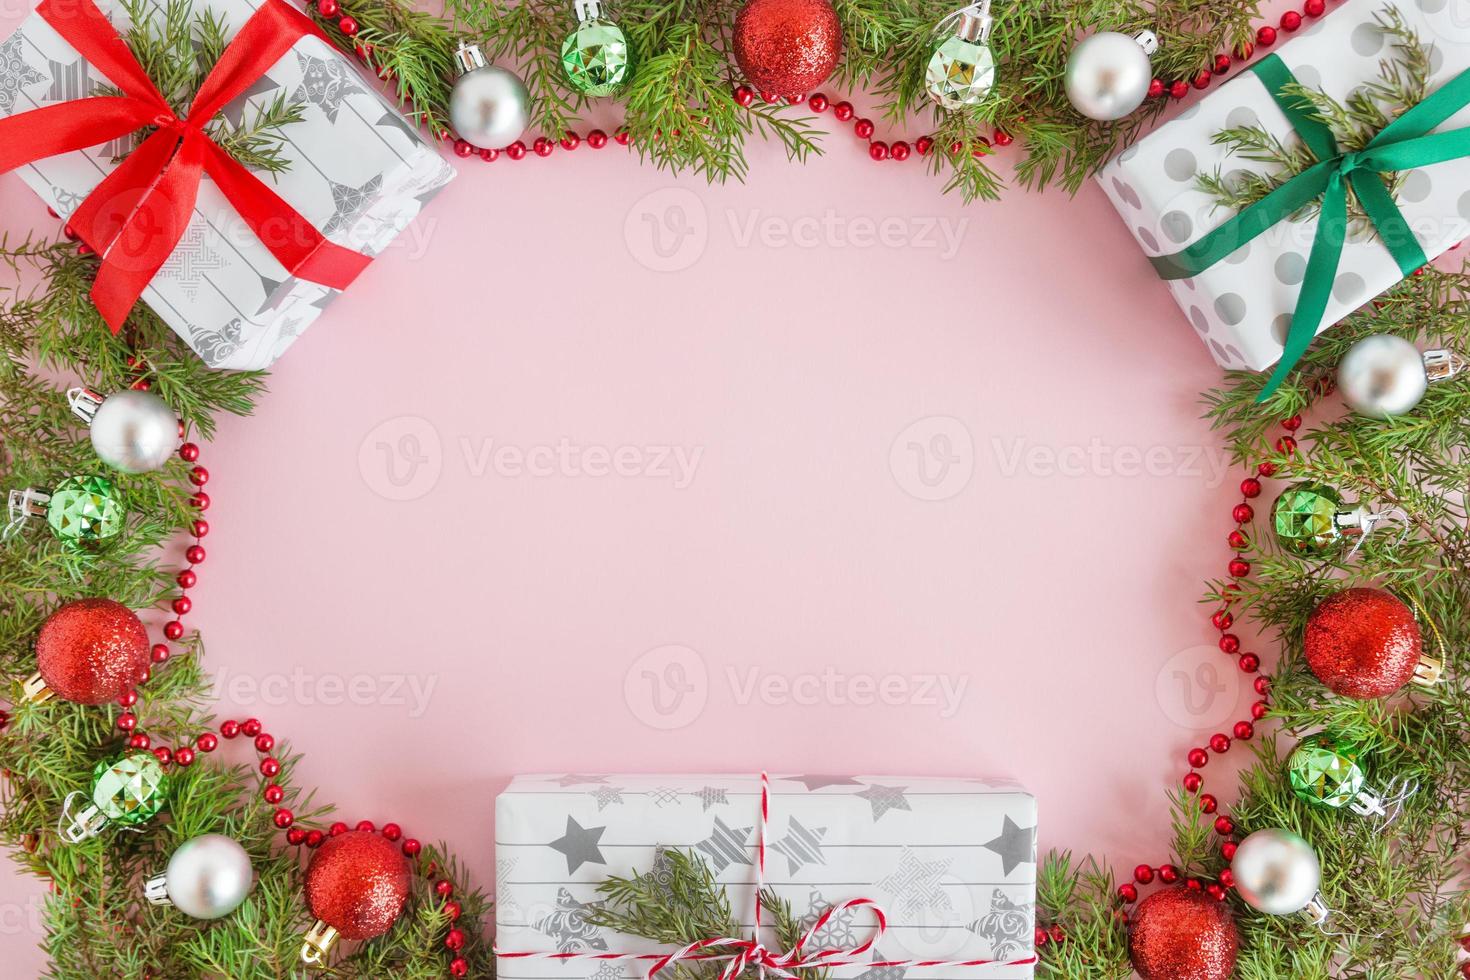 vista superior en un marco de adornos navideños rojos, verdes y plateados, cajas de regalo y ramas de abeto sobre un fondo rosa con espacio para copiar. foto